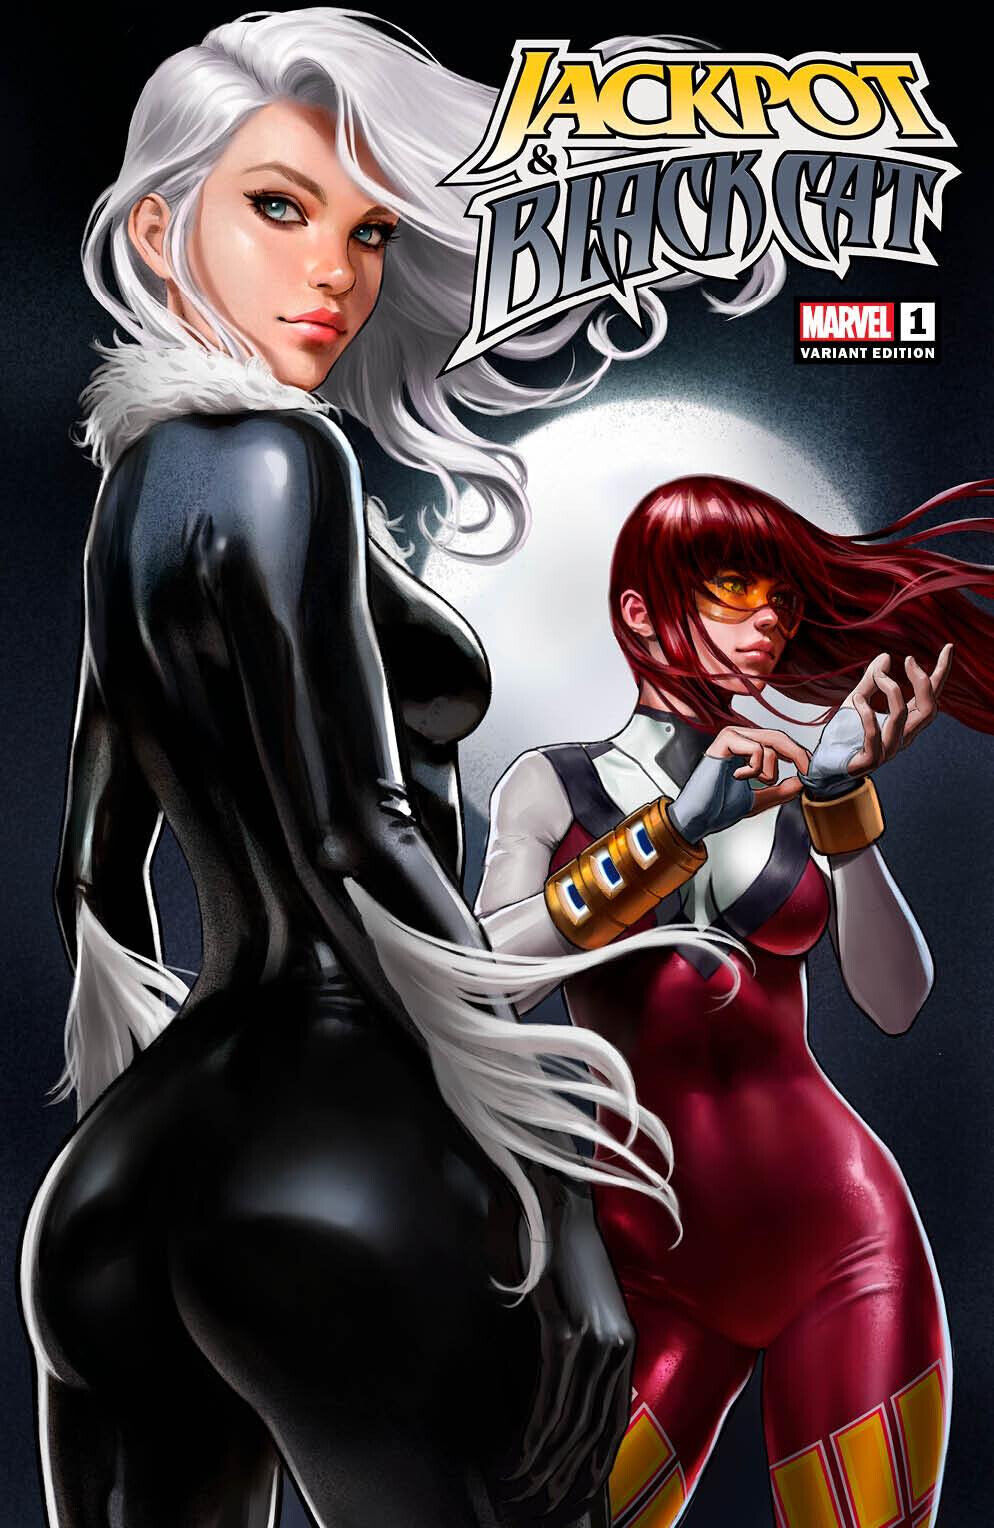 JACKPOT & BLACK CAT #1 (IVAN TALAVERA EXCLUSIVE VARIANT) COMIC BOOK ~ Marvel